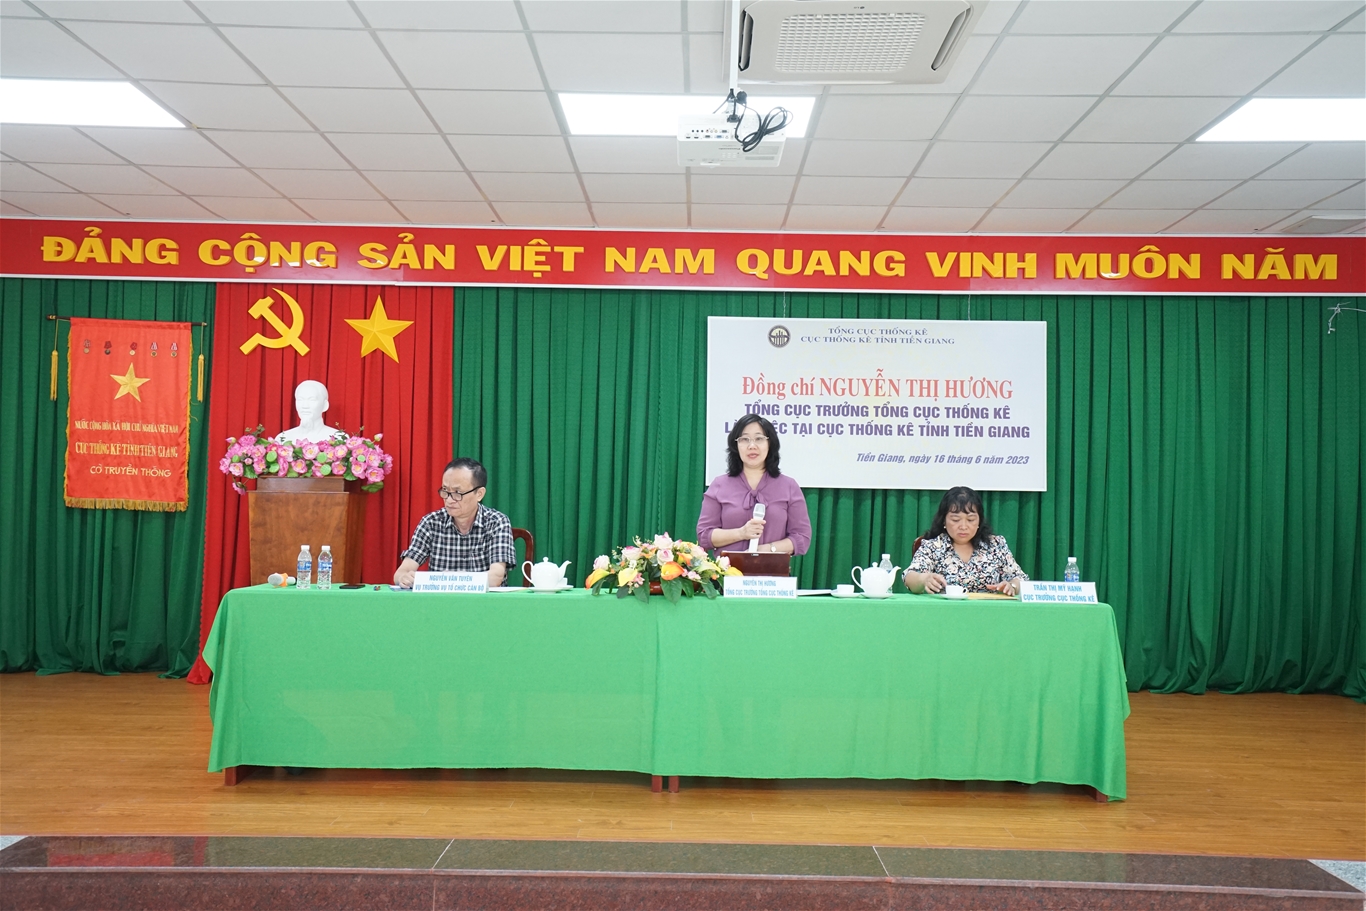 Tổng cục trưởng Nguyễn Thị Hương làm việc tại Cục Thống kê tỉnh Tiền Giang và Ủy ban nhân dân tỉnh Tiền Giang